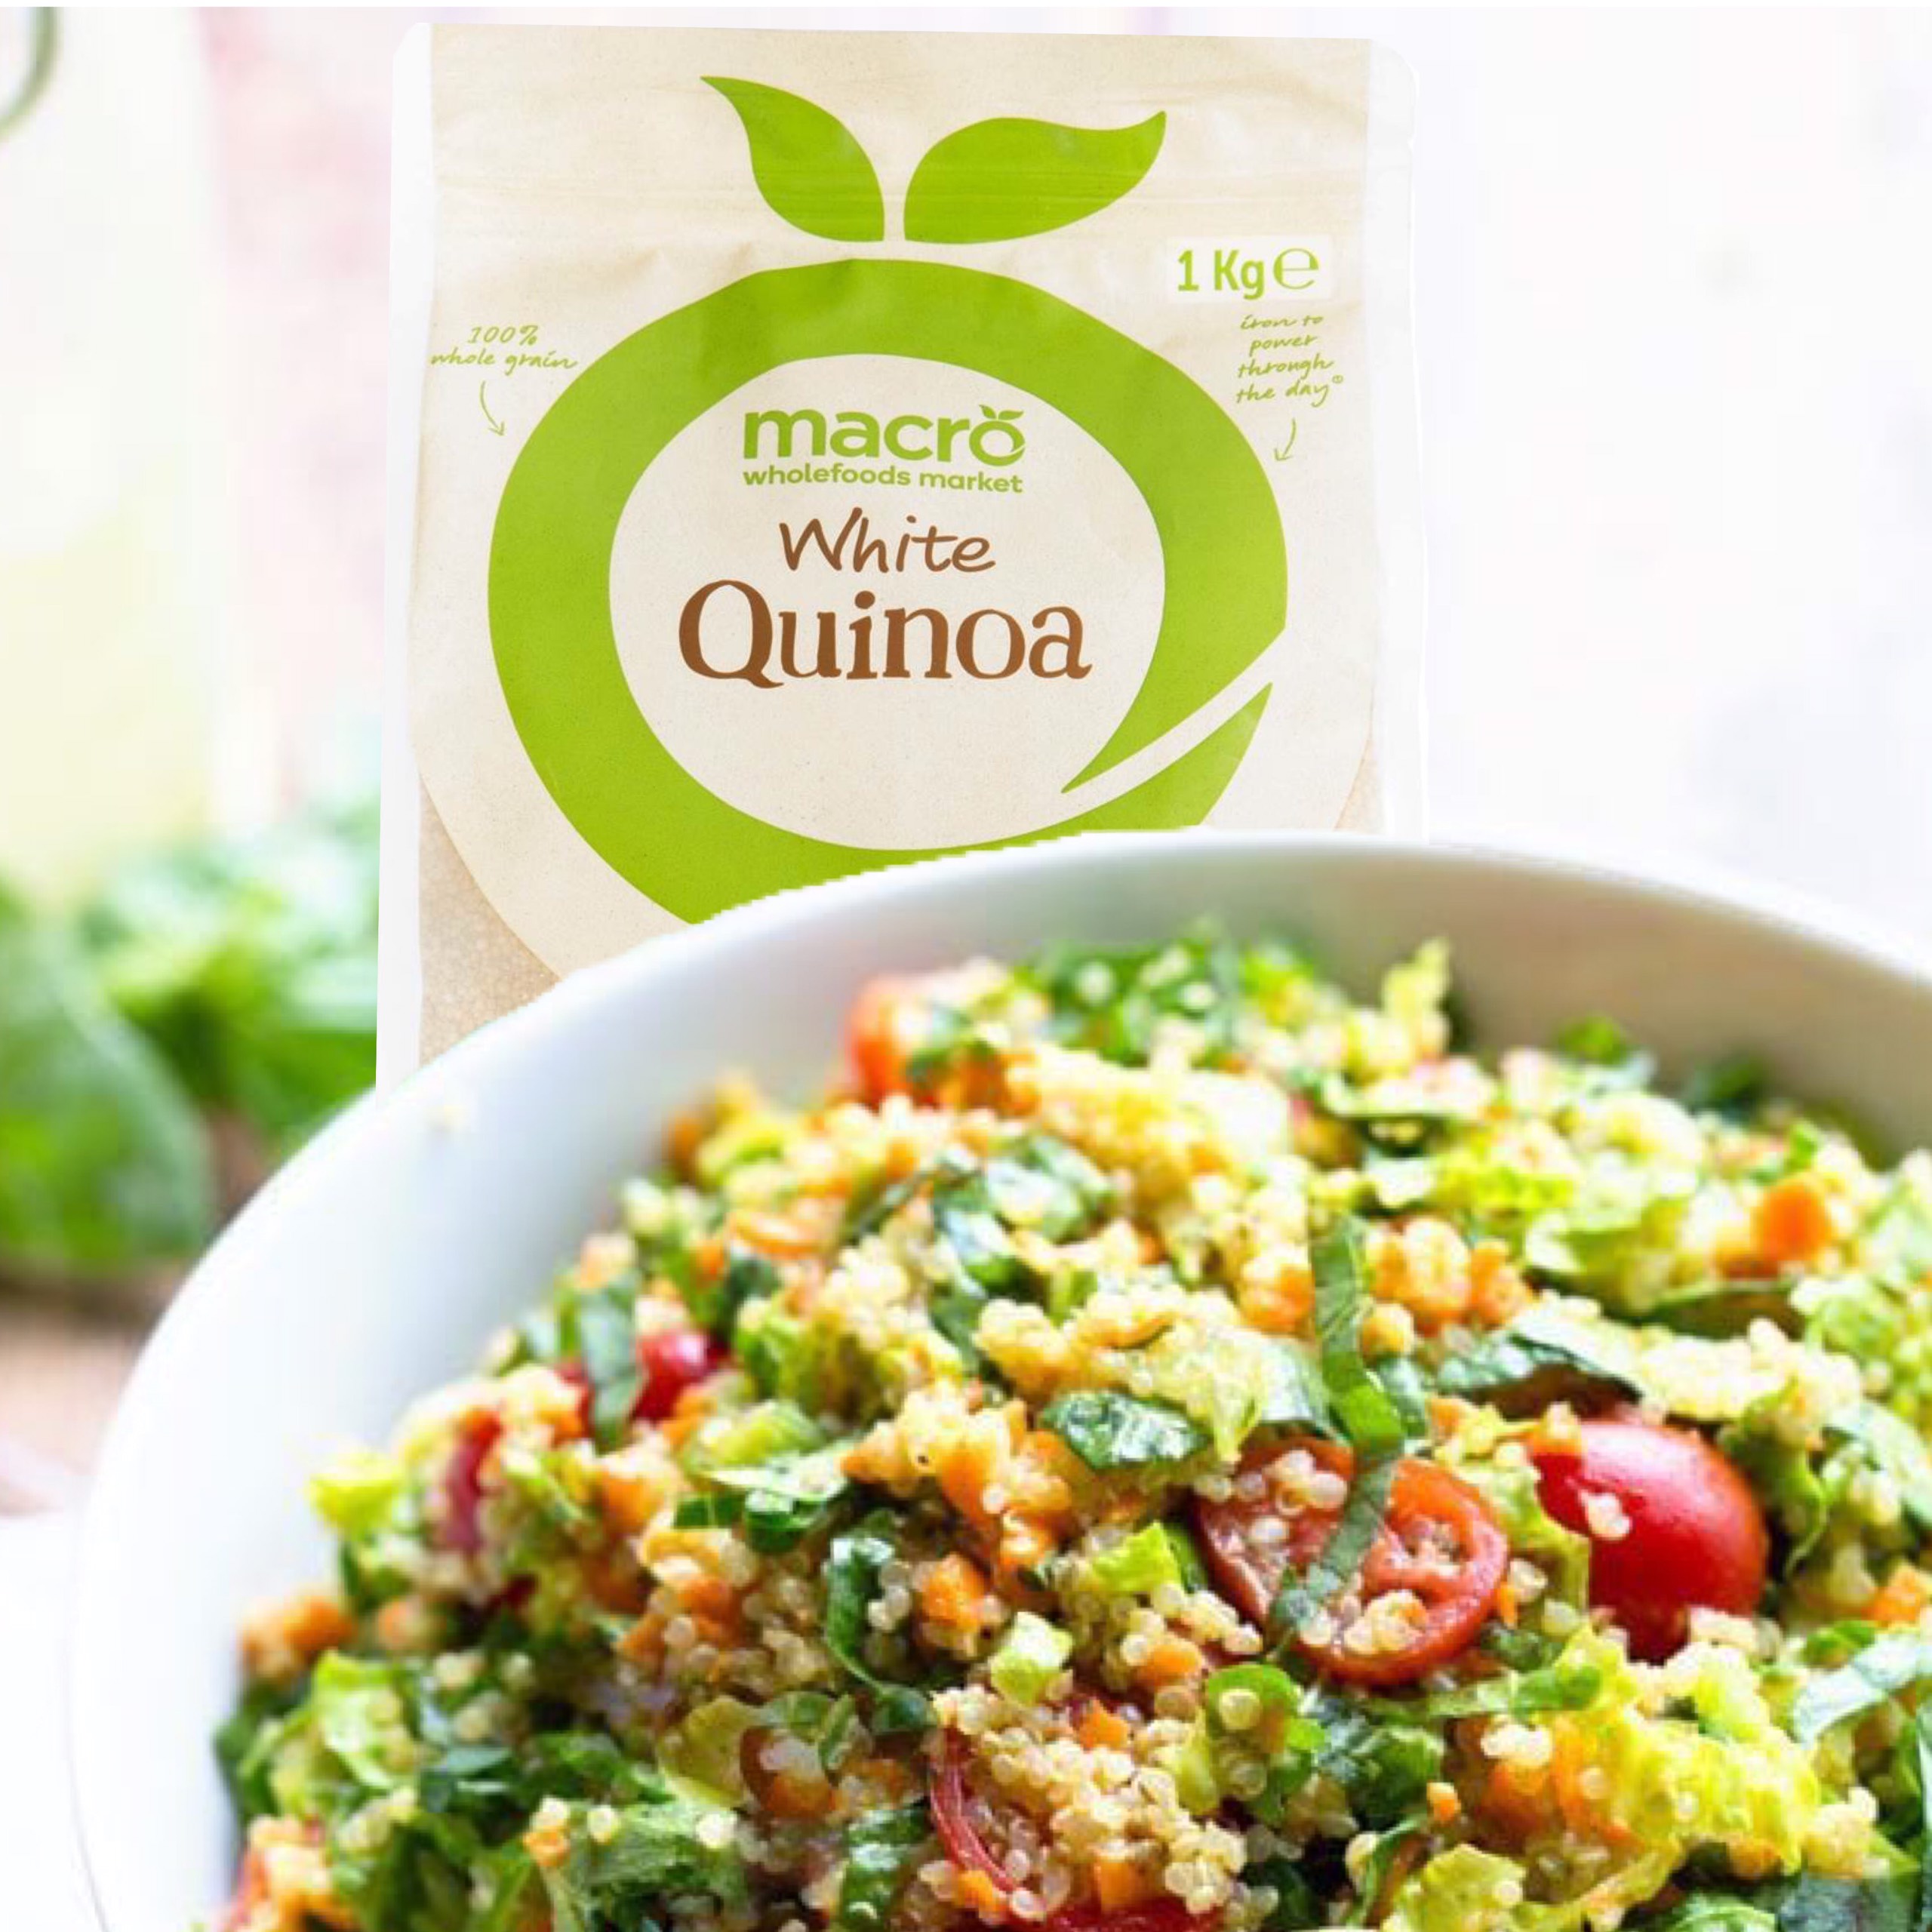 Hạt Quinoa Macro White Quinoa Úc giàu dinh dưỡng giúp giảm cholesterol, kiểm soát đường huyết, tốt cho tim mạch - QuaTangMe Extaste